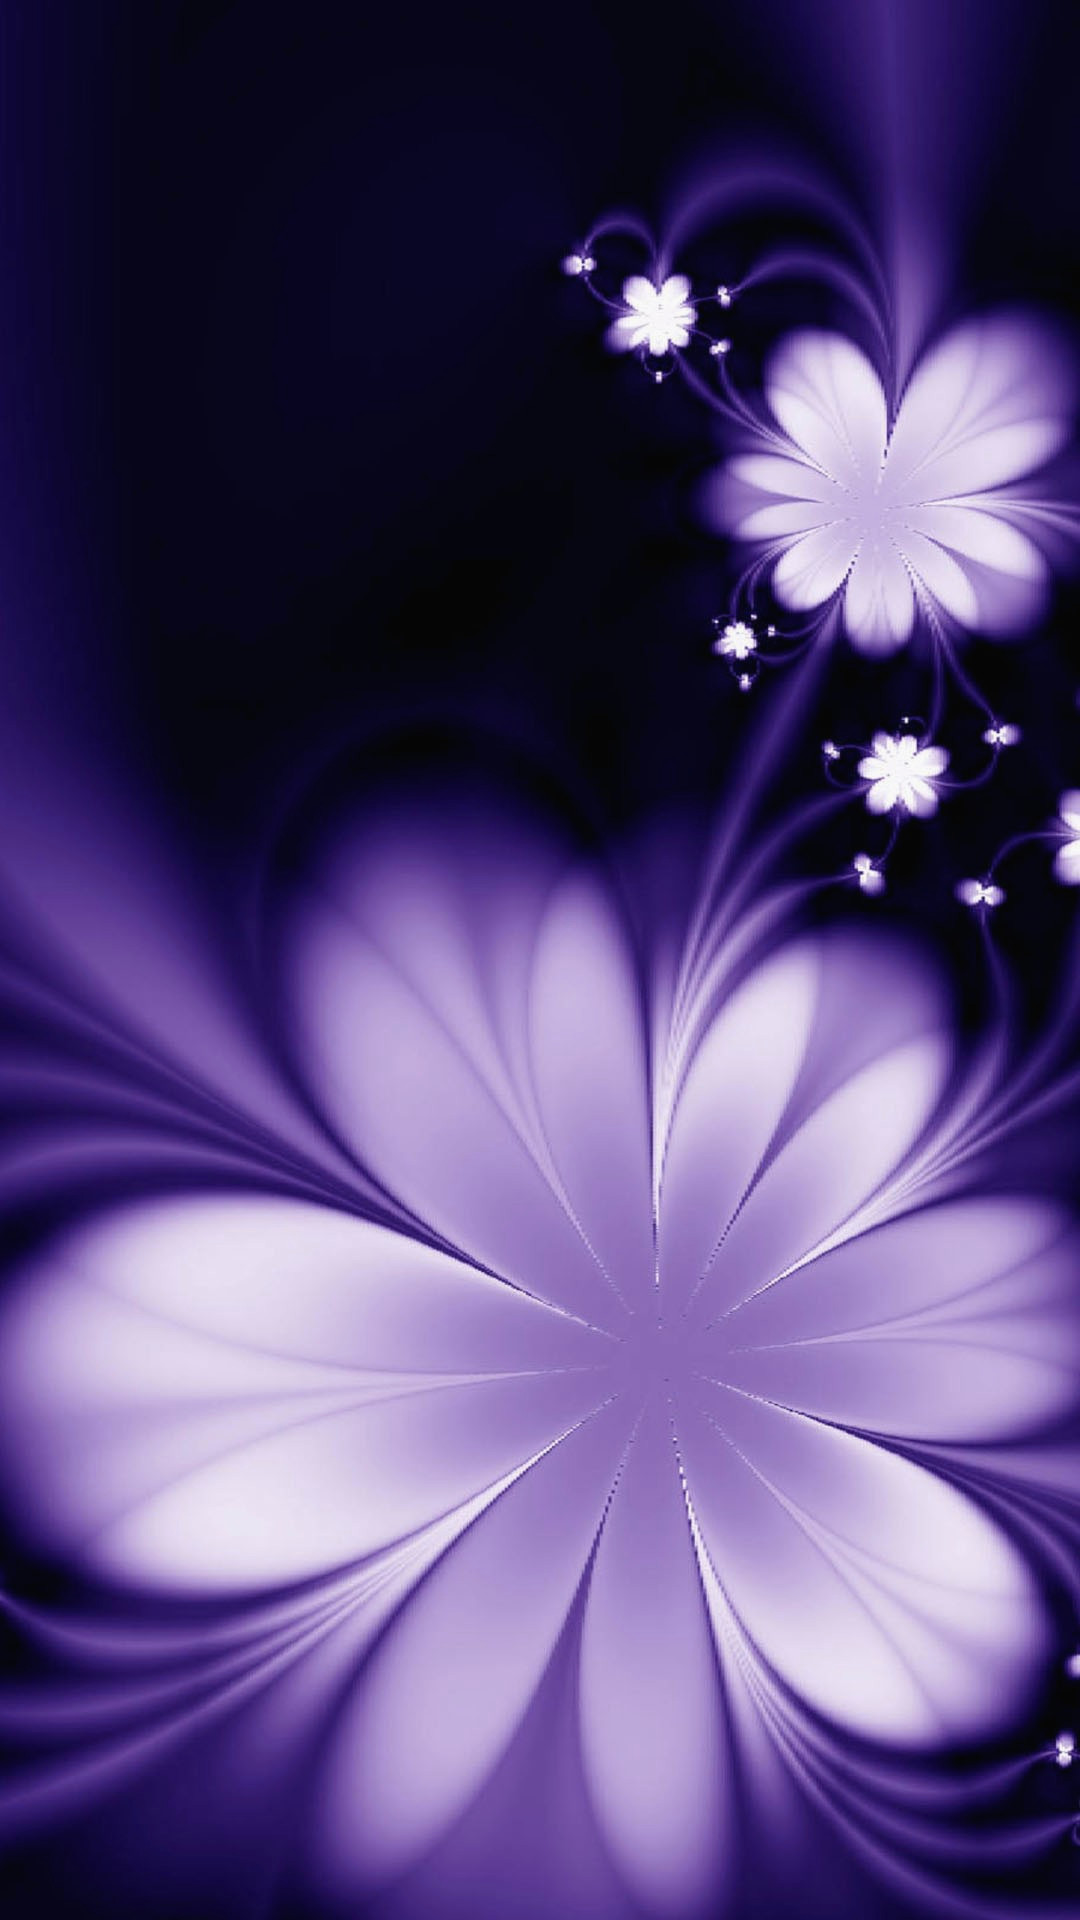 モバイル用の愛の壁紙,バイオレット,紫の,青い,花弁,ライラック